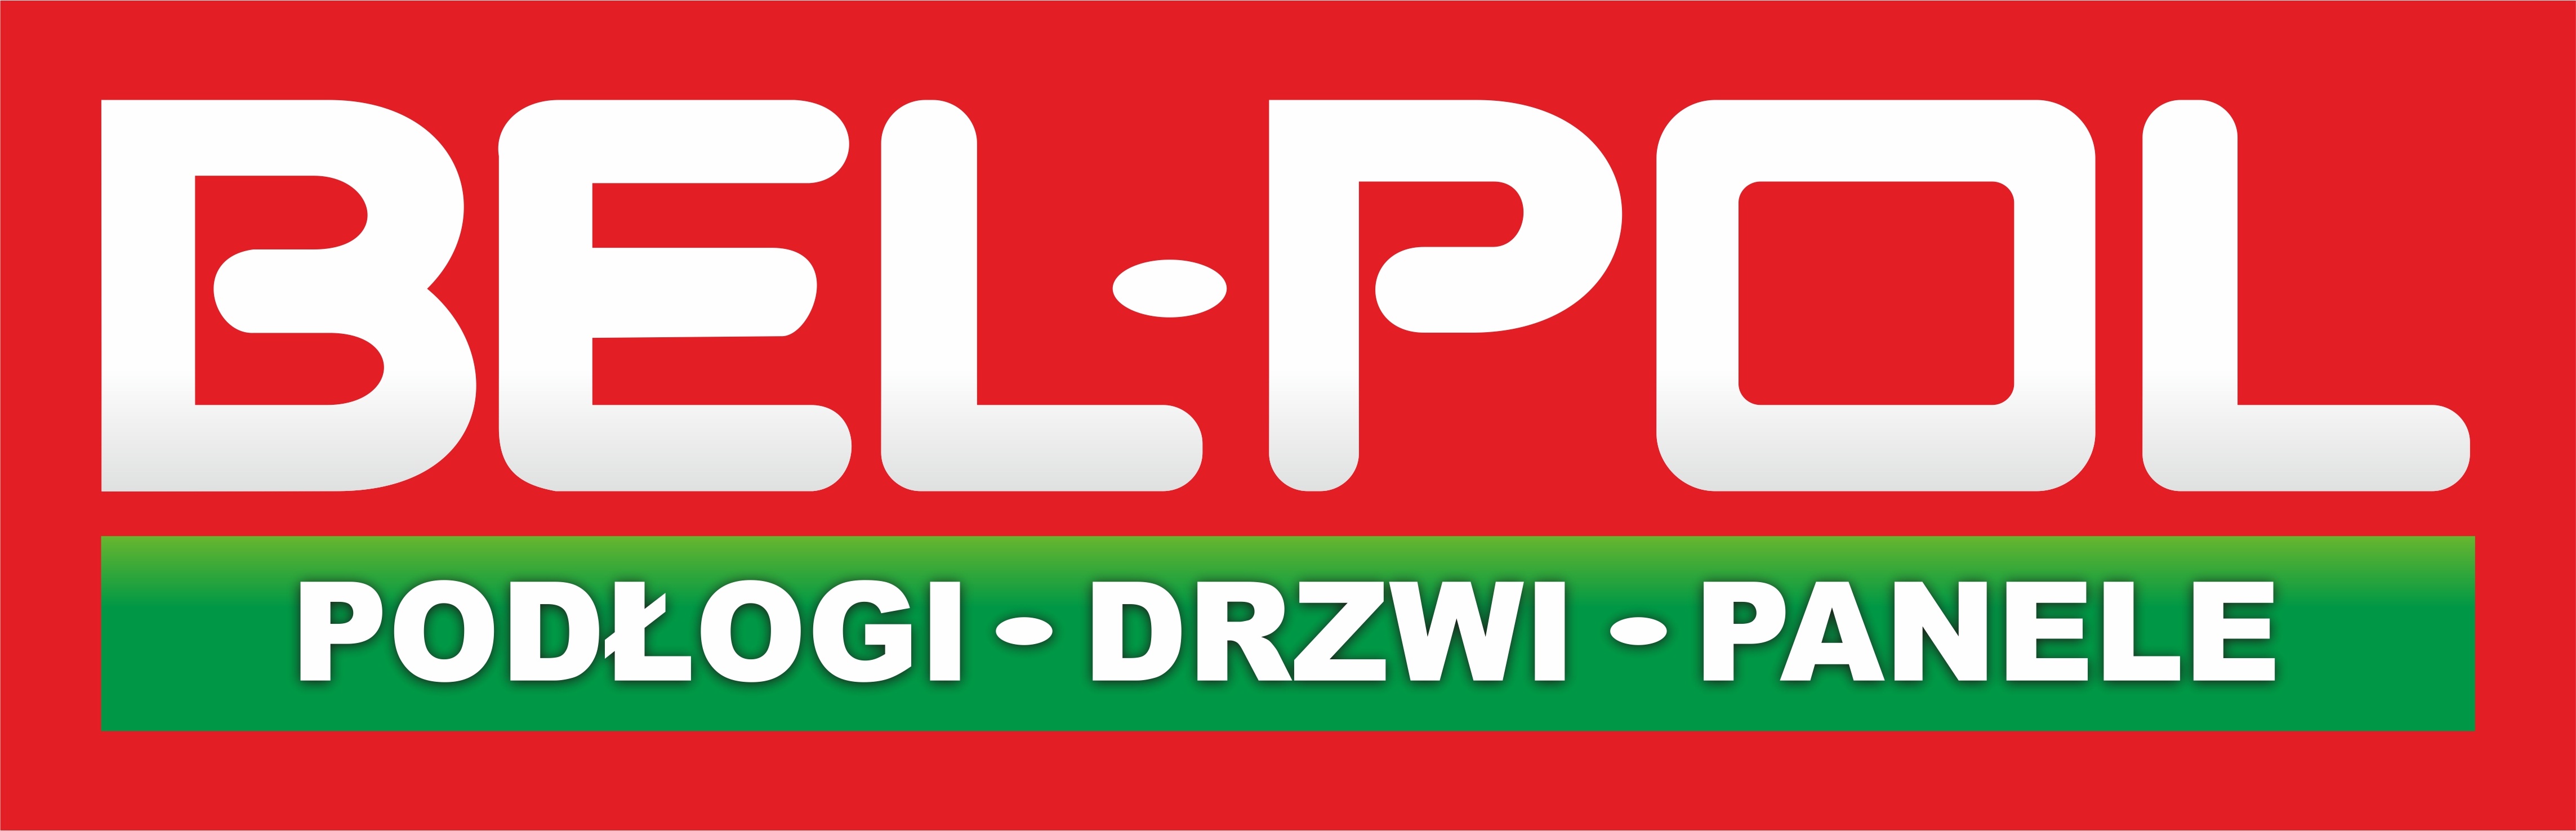 BEL-POL logo 2011-czerwone tlo